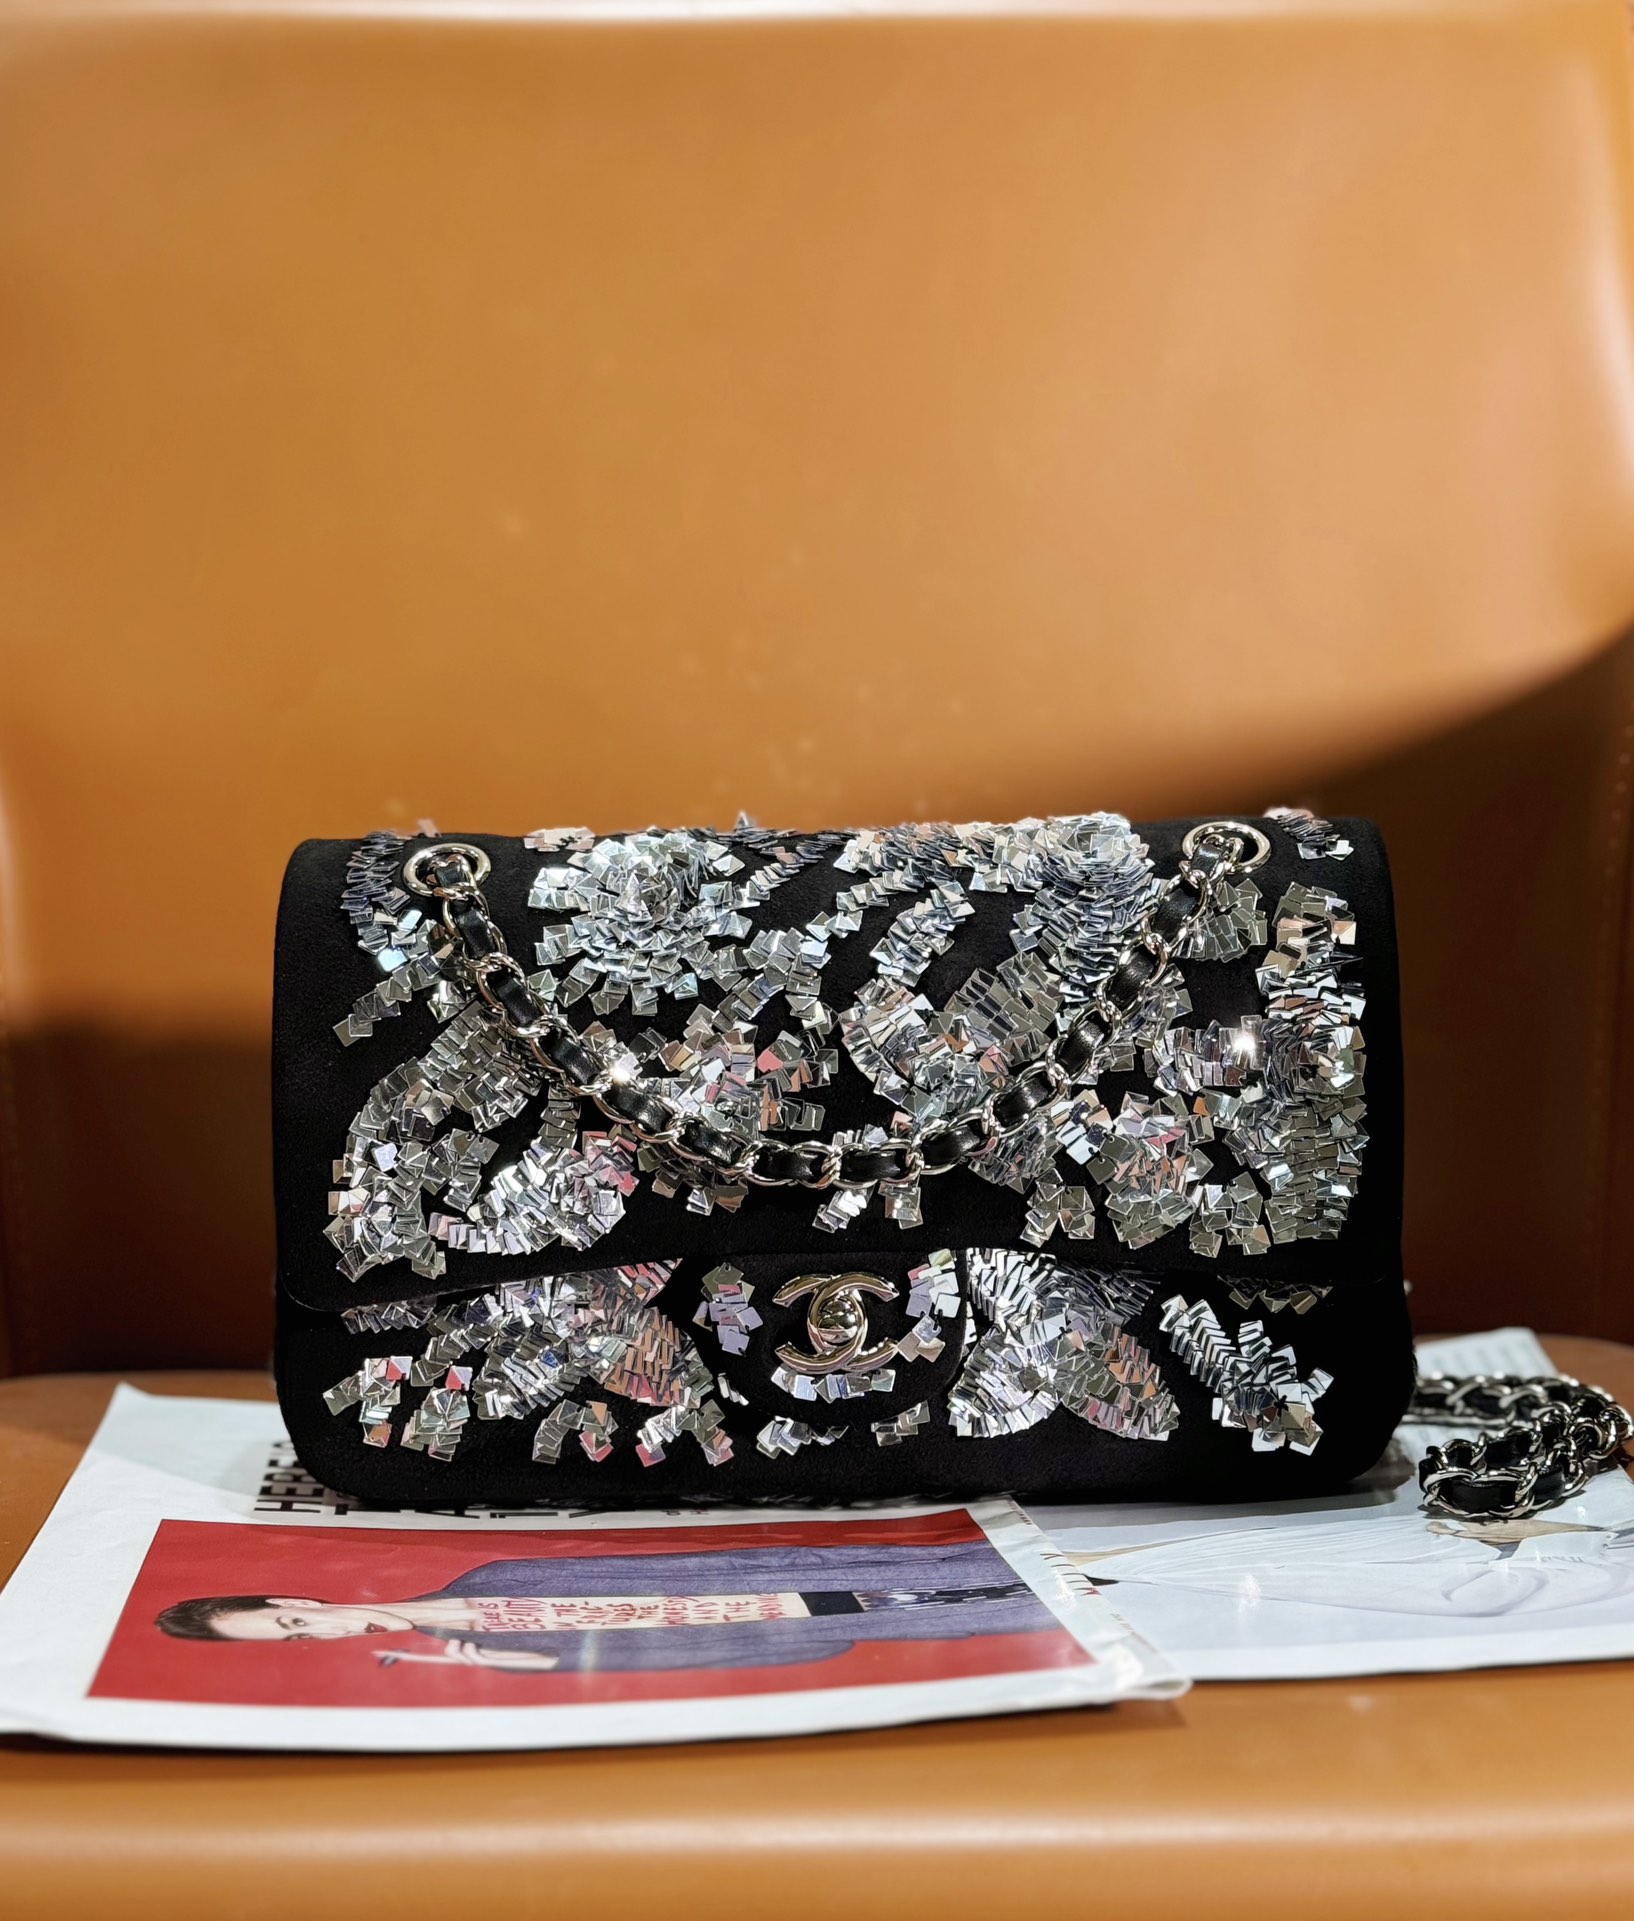 שאנל Chanel Classic Flap Bag תיקים תיקי כתף וצד שחור רוז כסף קבע עם יהלומים Weave אוסף נפל/חורף Vintage